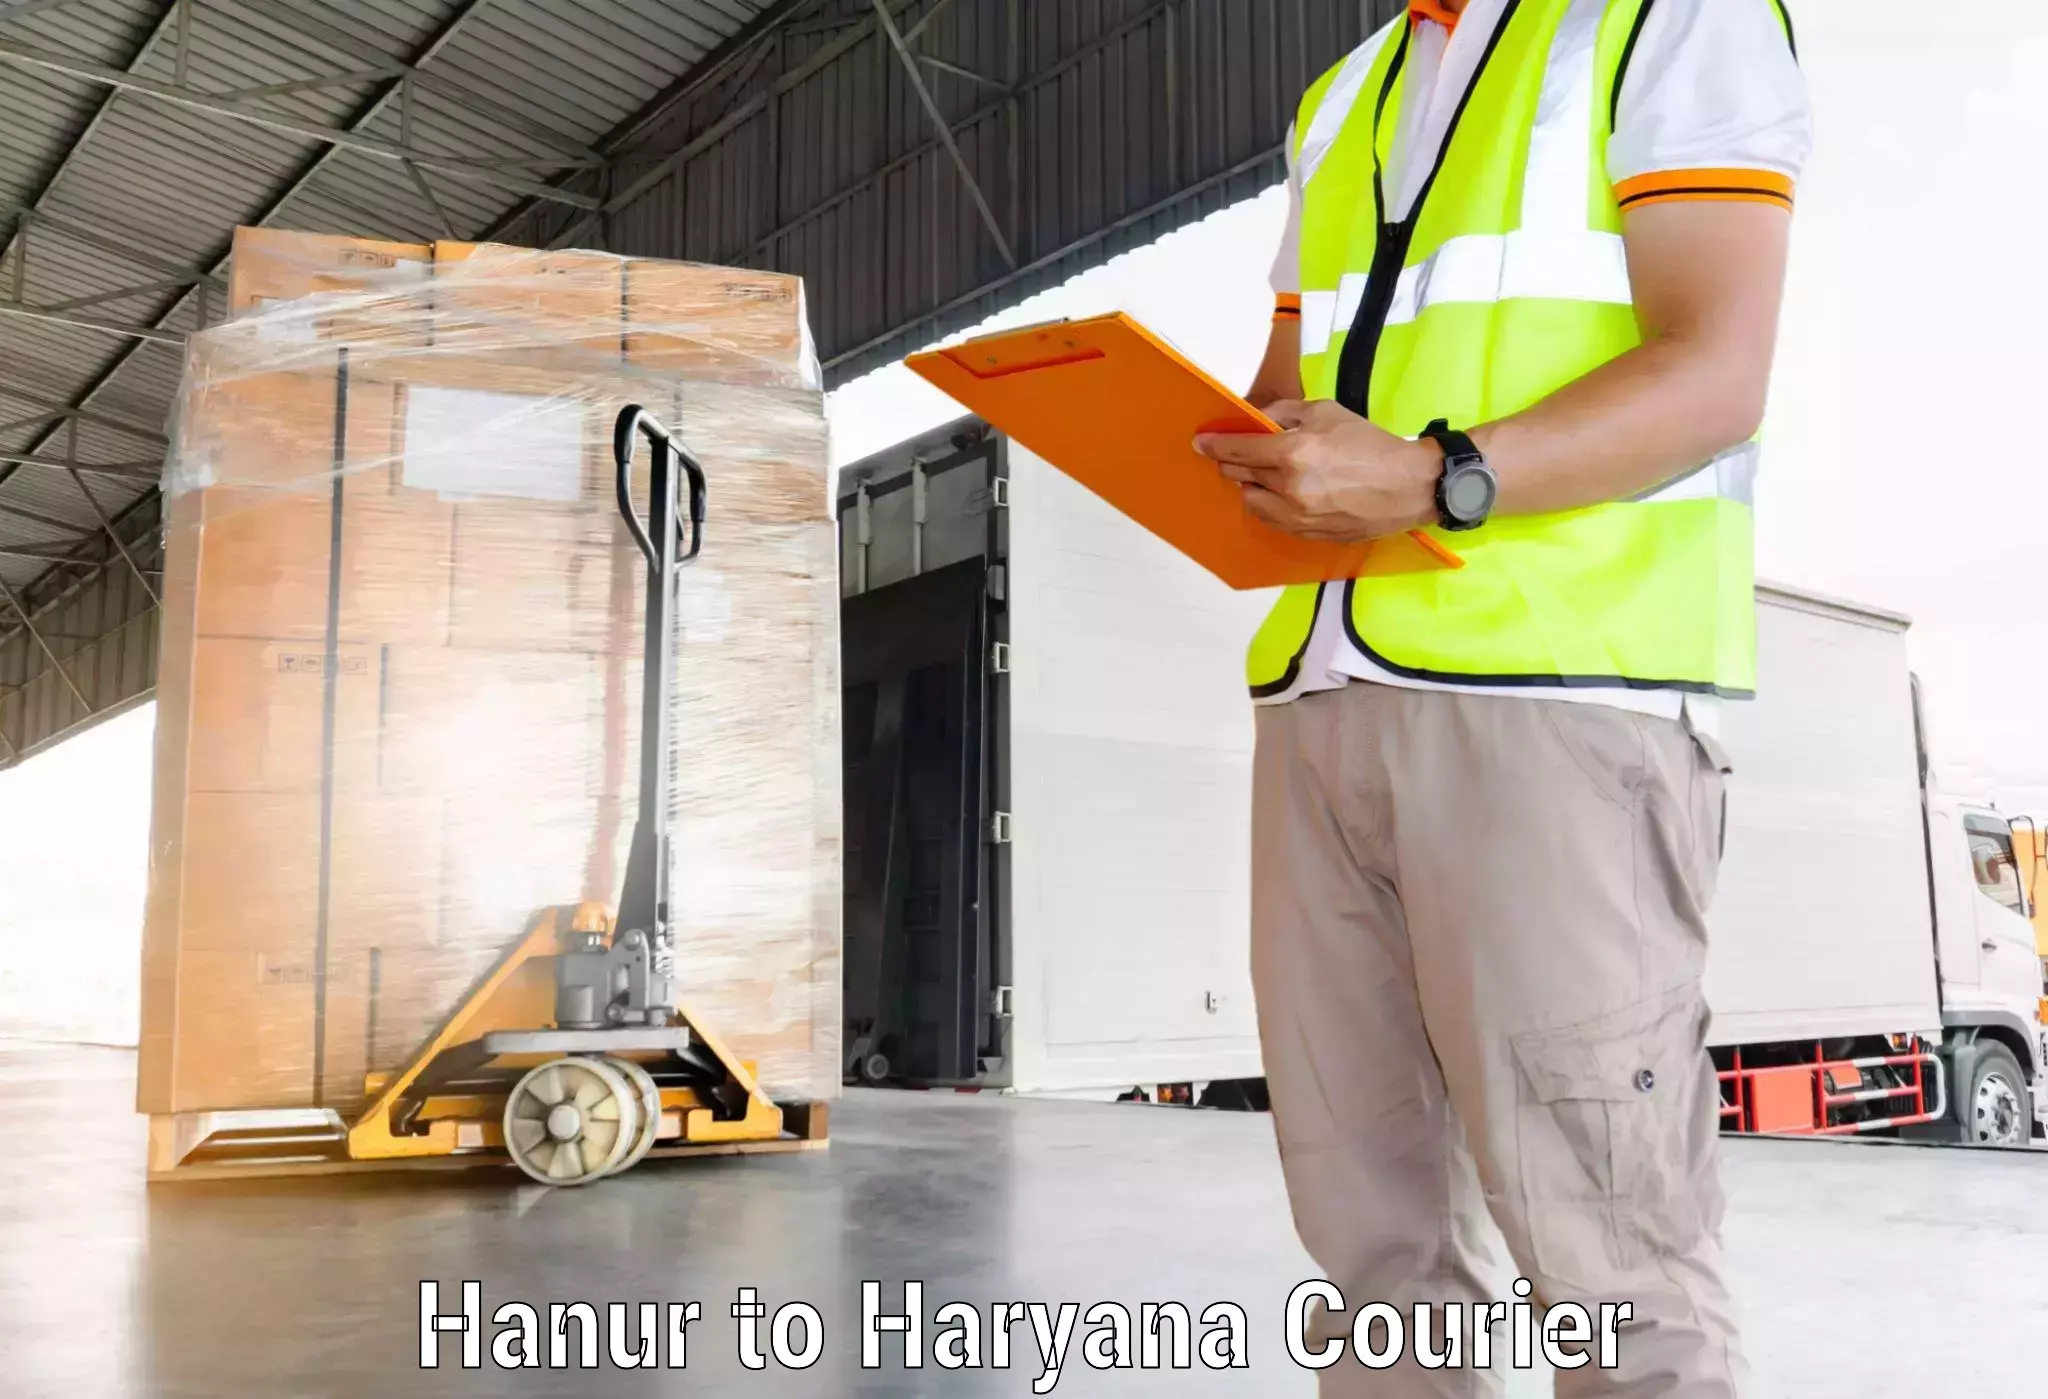 Customer-oriented courier services Hanur to Rewari